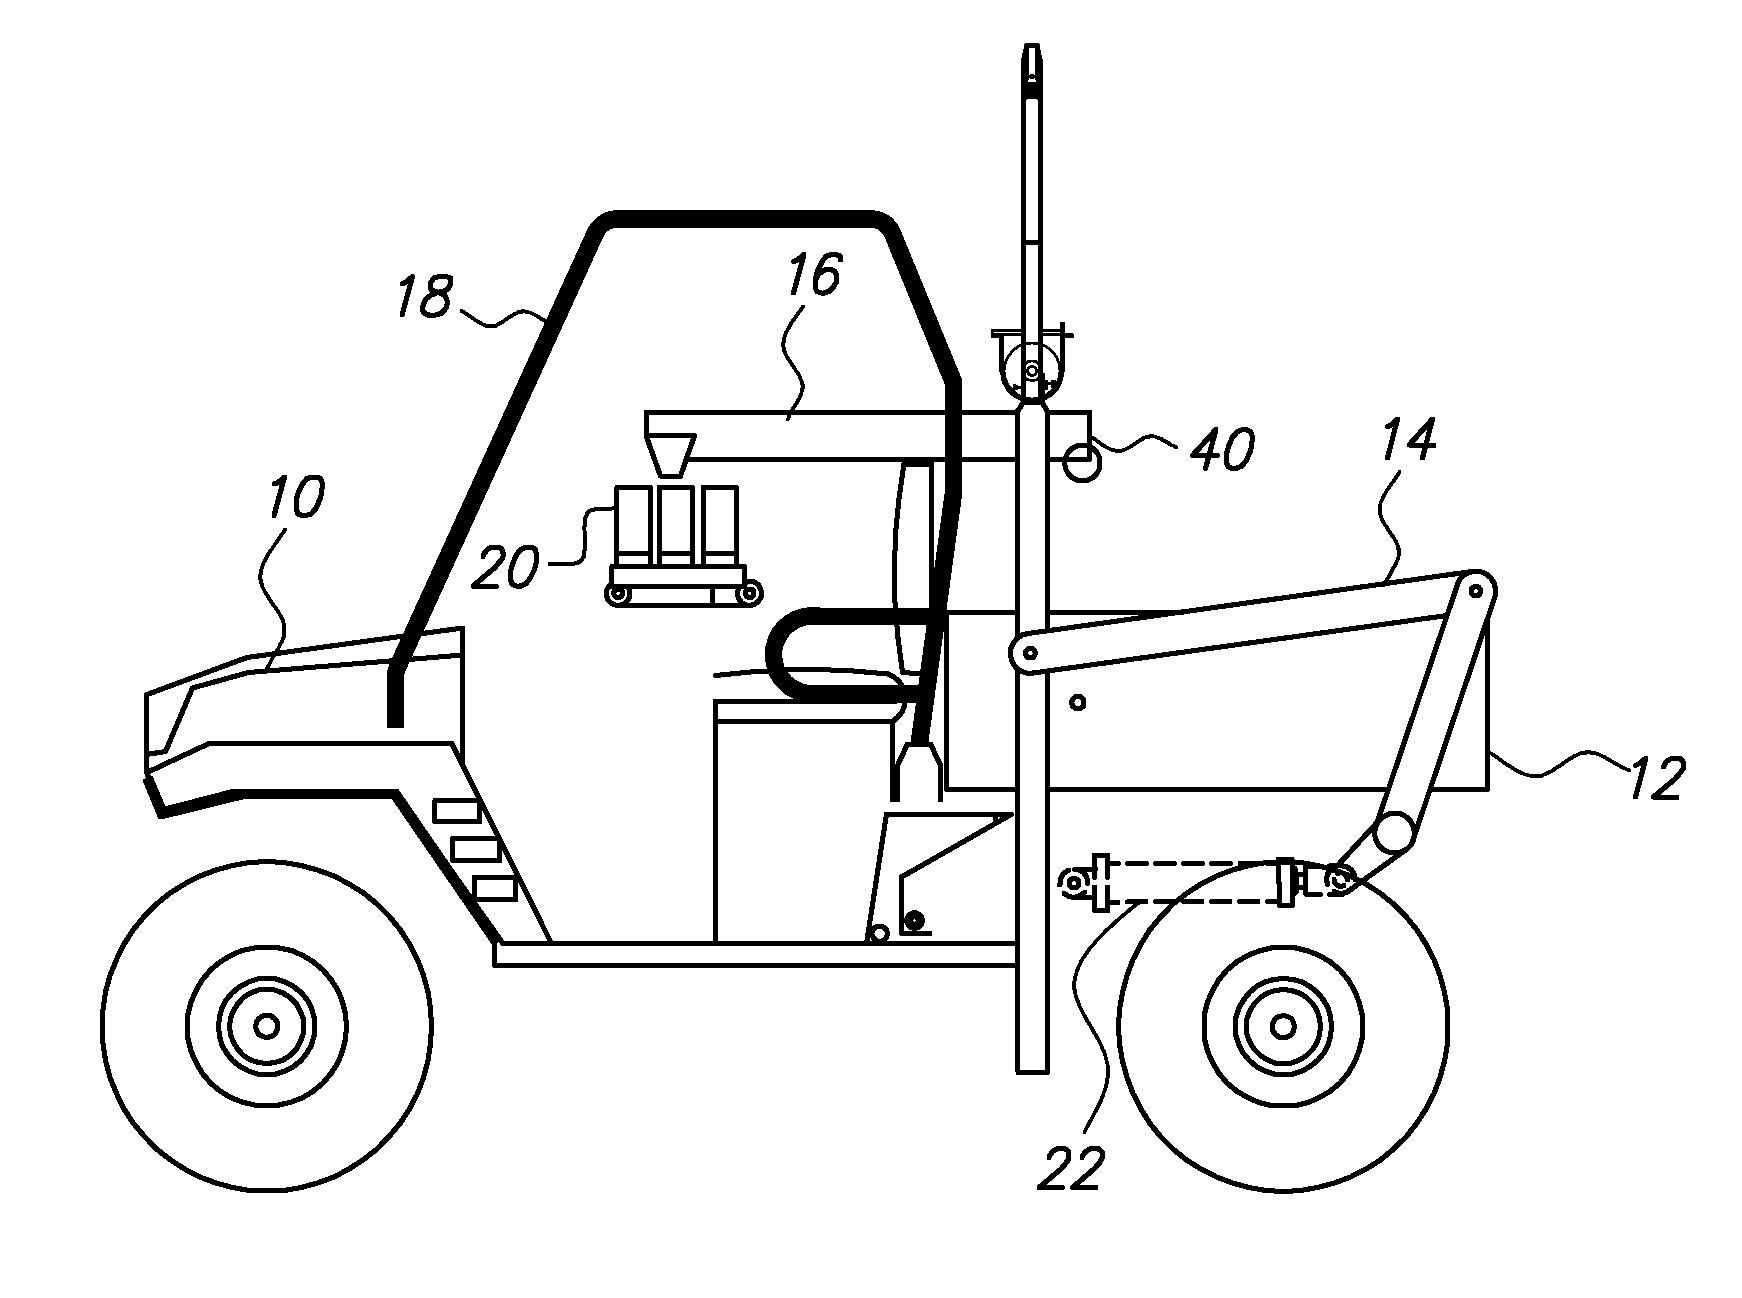 Vehicle-mounted soil sampling apparatus